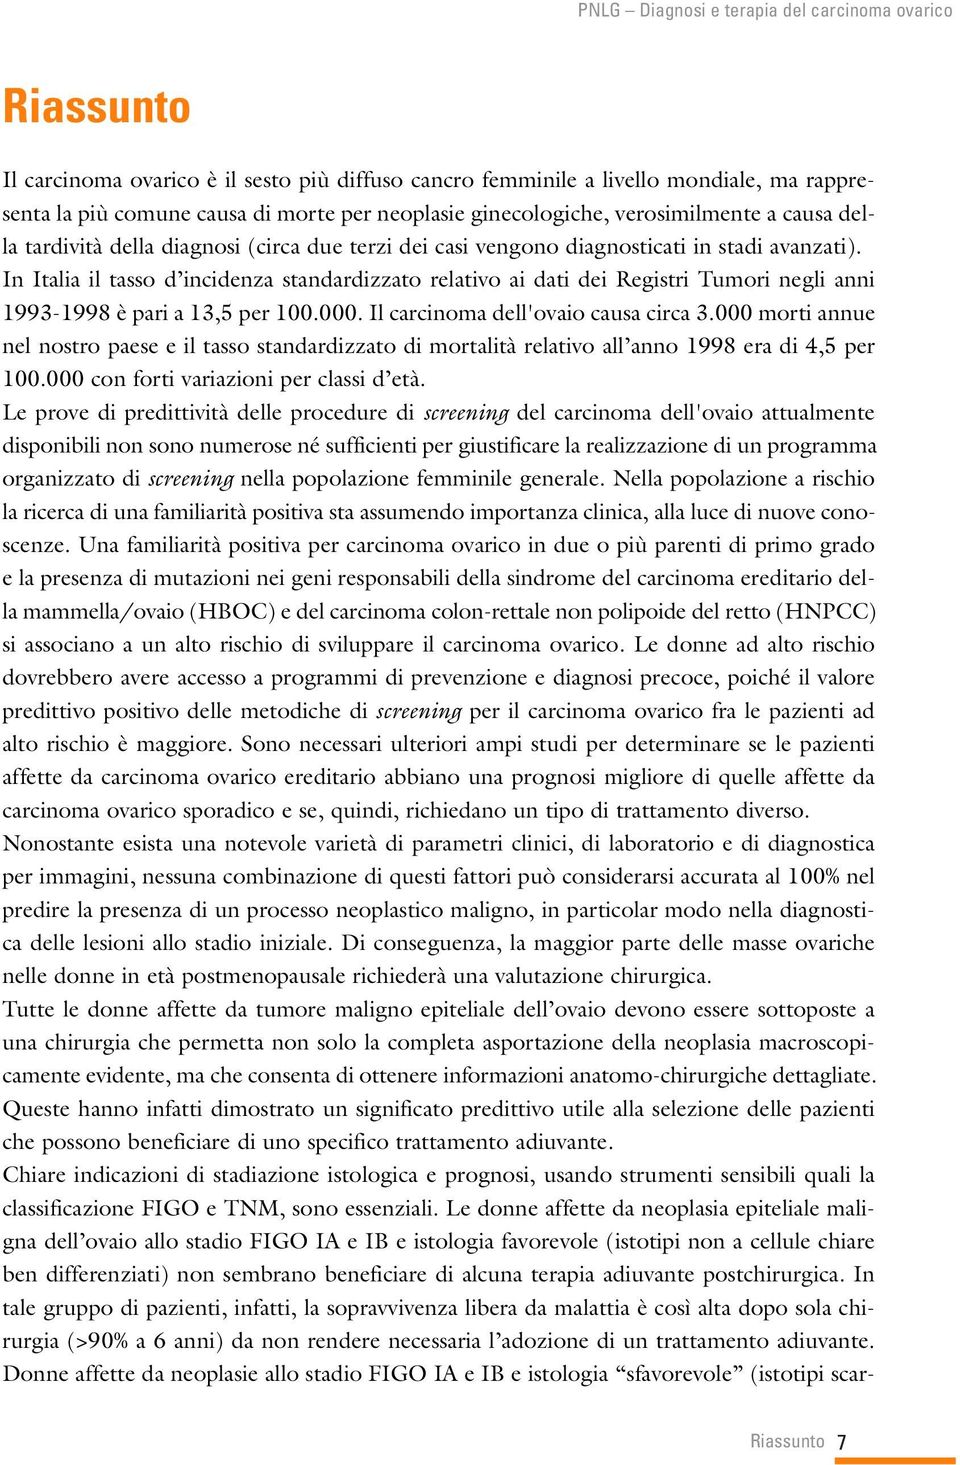 In Italia il tasso d incidenza standardizzato relativo ai dati dei Registri Tumori negli anni 1993-1998 è pari a 13,5 per 100.000. Il carcinoma dell'ovaio causa circa 3.